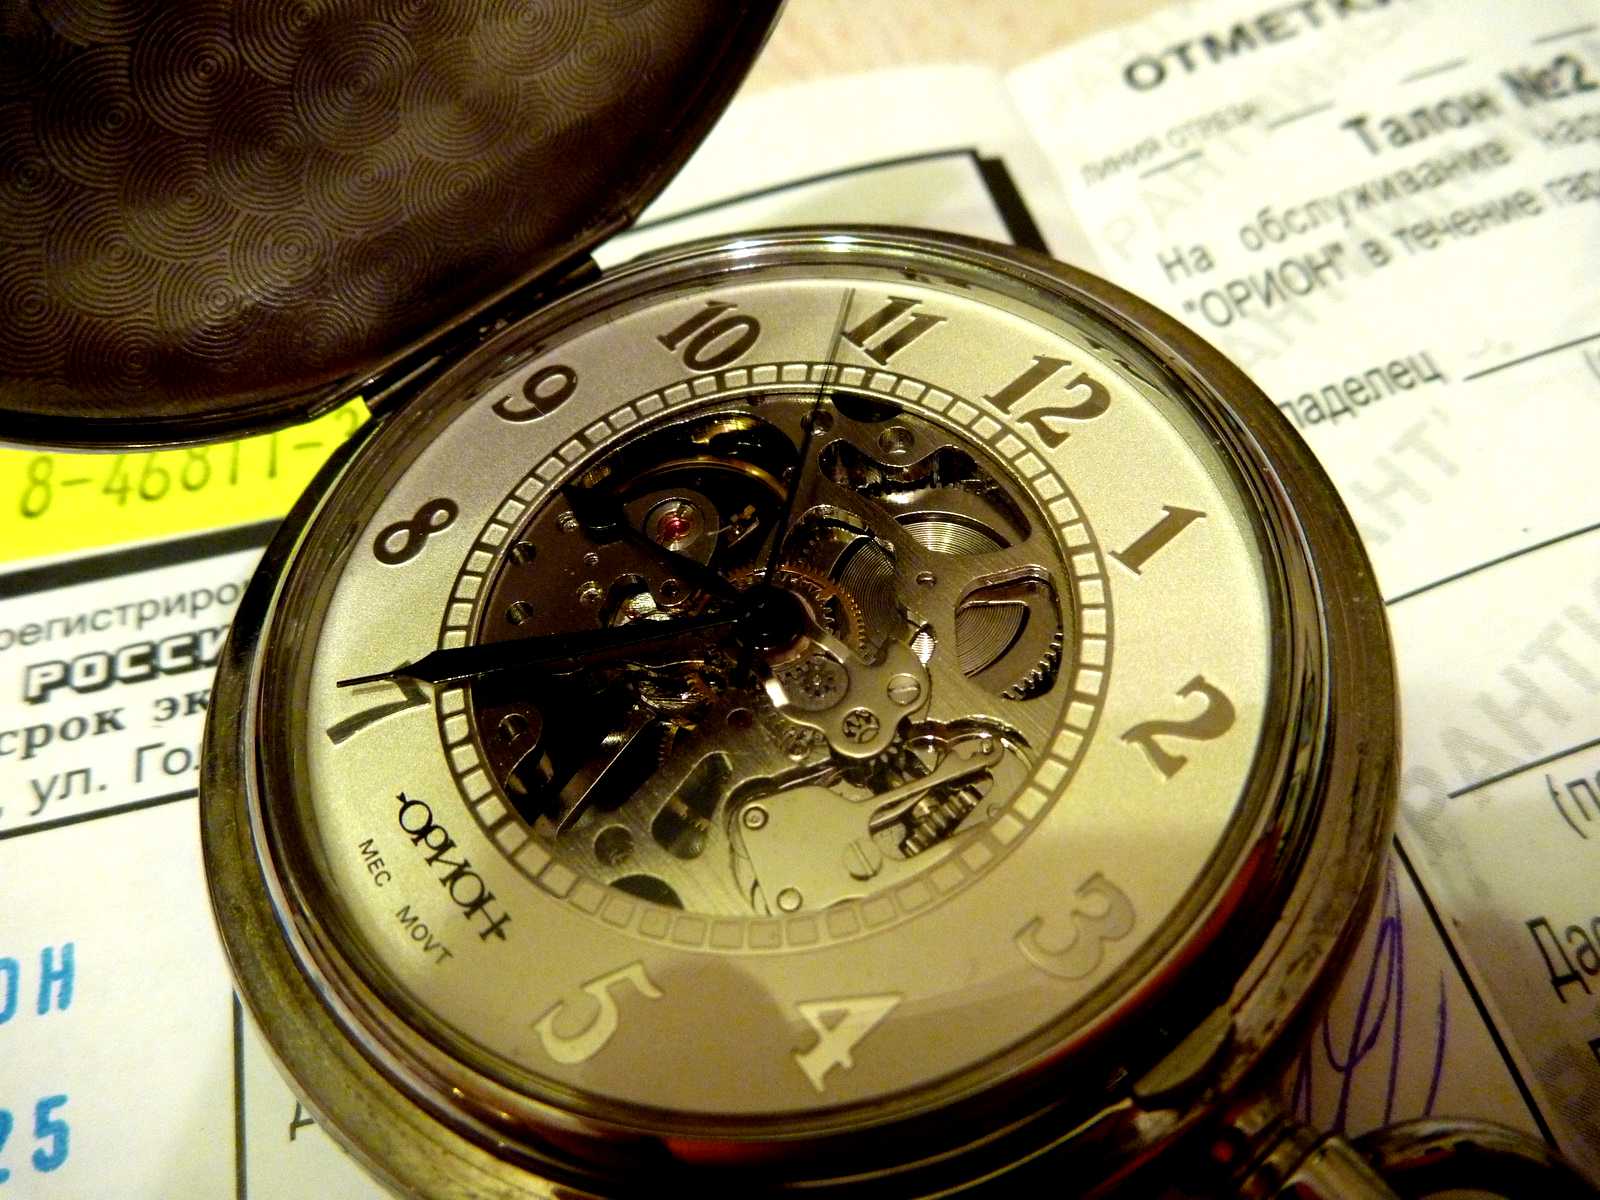 9 тысяч часов. Часы Орион скелетон. Карманные часы Орион скелетон. Орион часы мужские карманные. Часы Орион скелетон 2002.